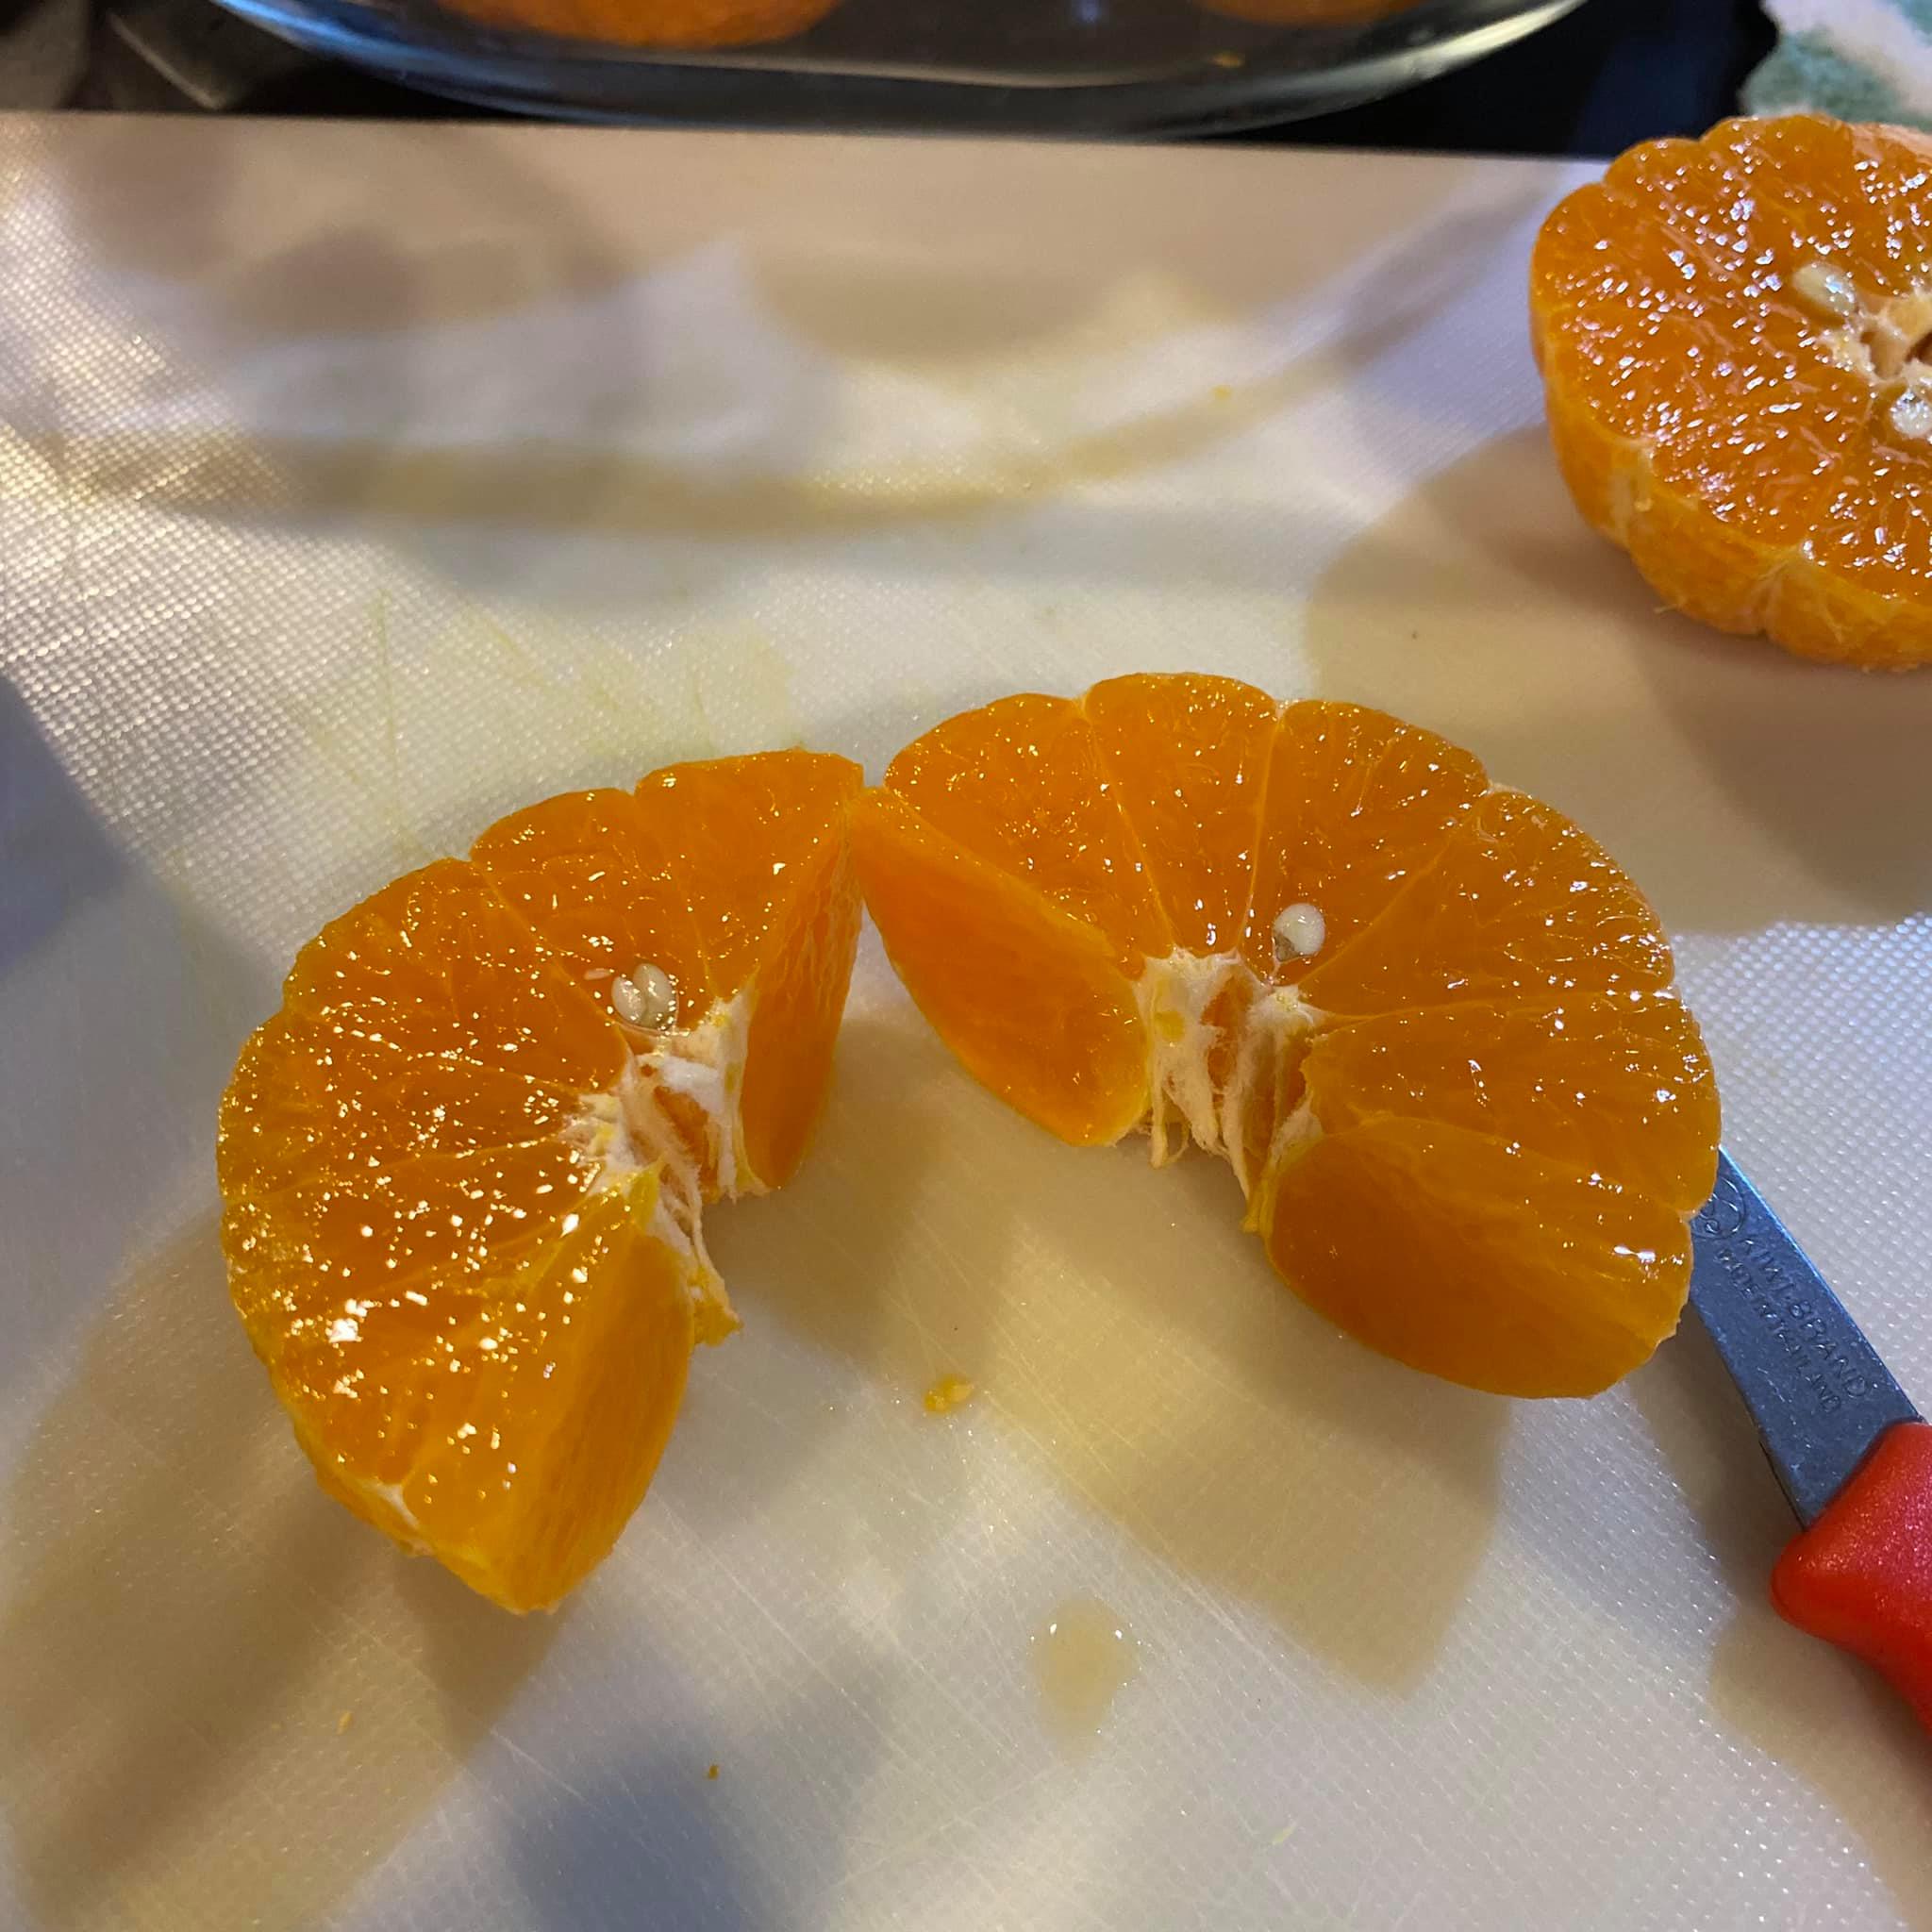 ปอกส้มยังไงให้น่าทาน5